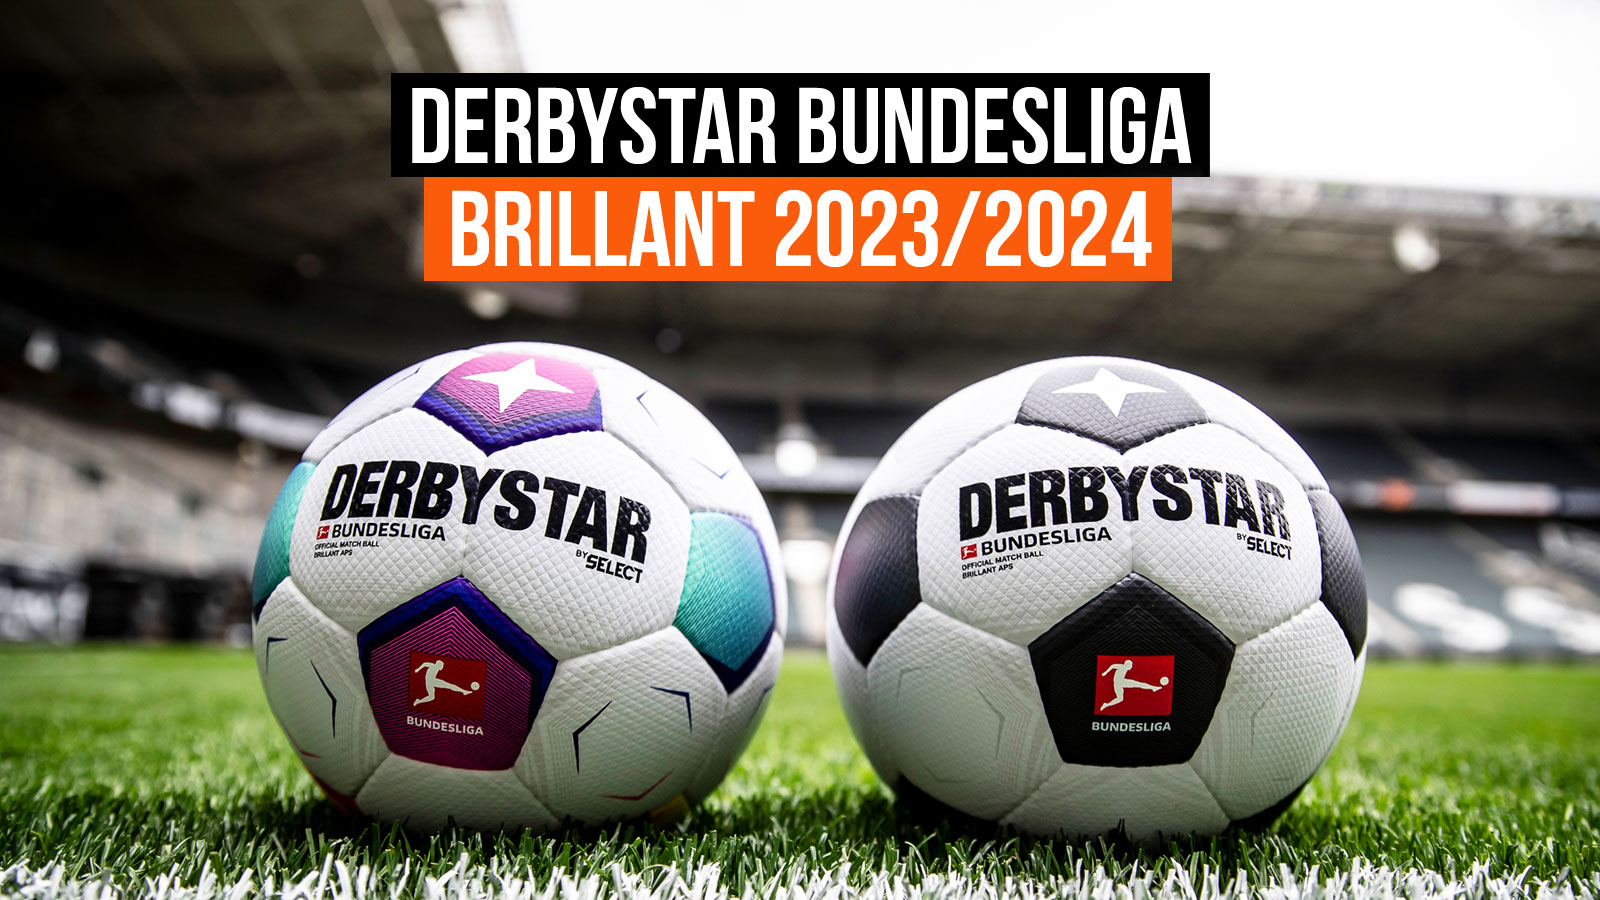 Бундеслига 2 2023 2024. Derbystar мяч Bundesliga 23/24. Derbystar Brilliant APS 2022. Футбольный мяч Бундеслиги 2023-2024. Чемпионат Германии по футболу 2023/2024.